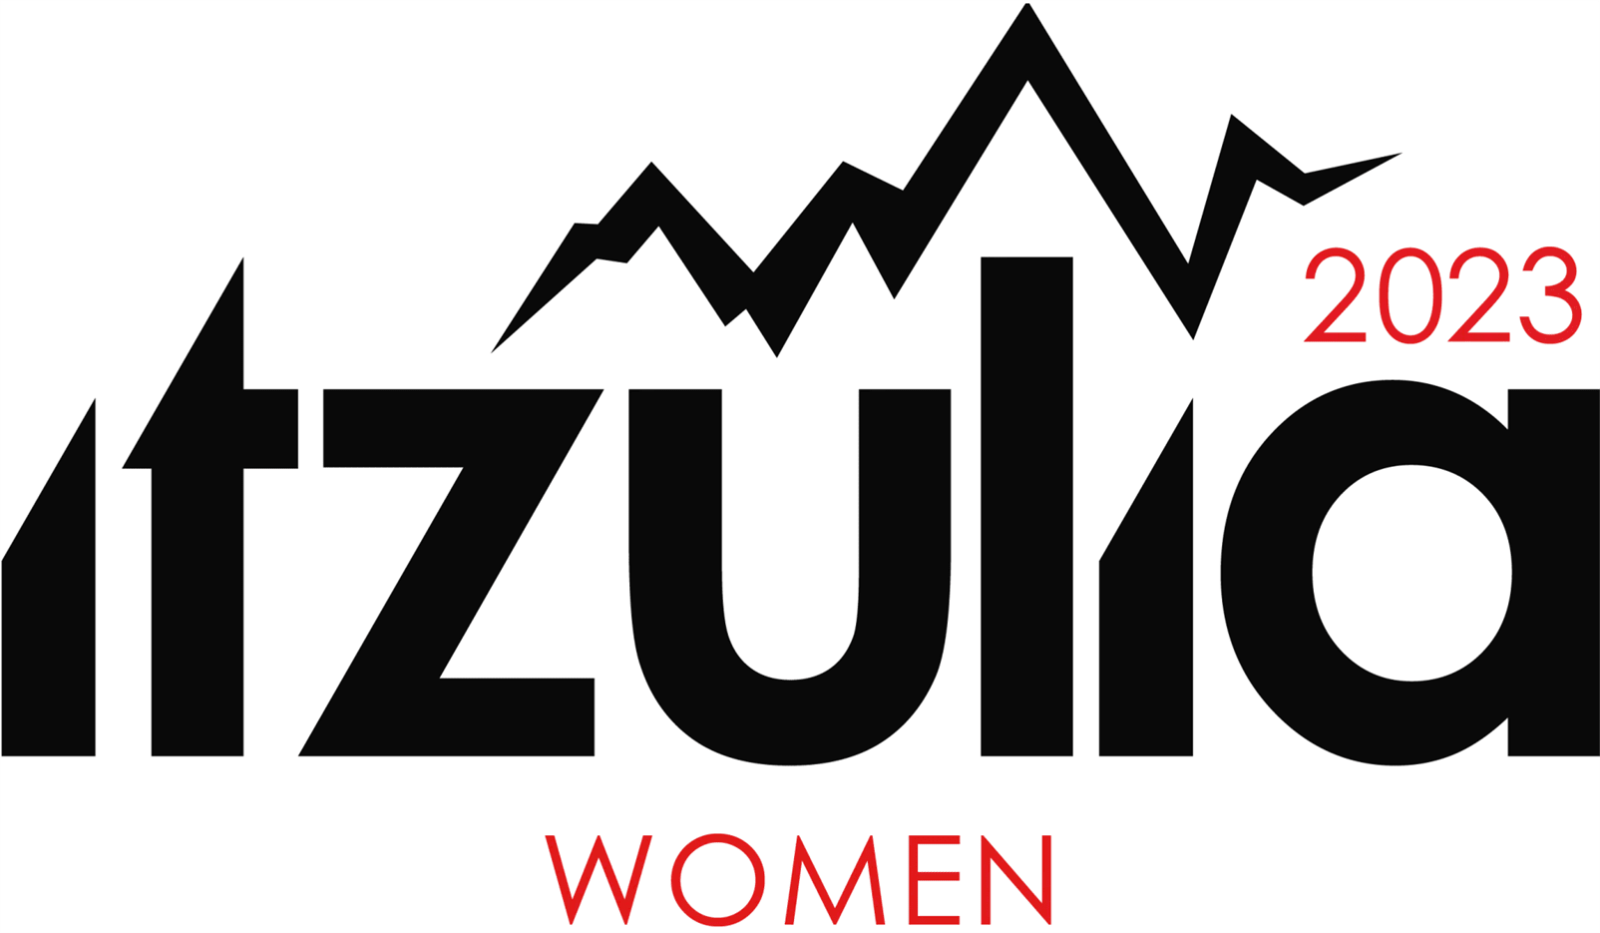 Itzulia_Logo_Negro_Edicion2023_Women-01.png